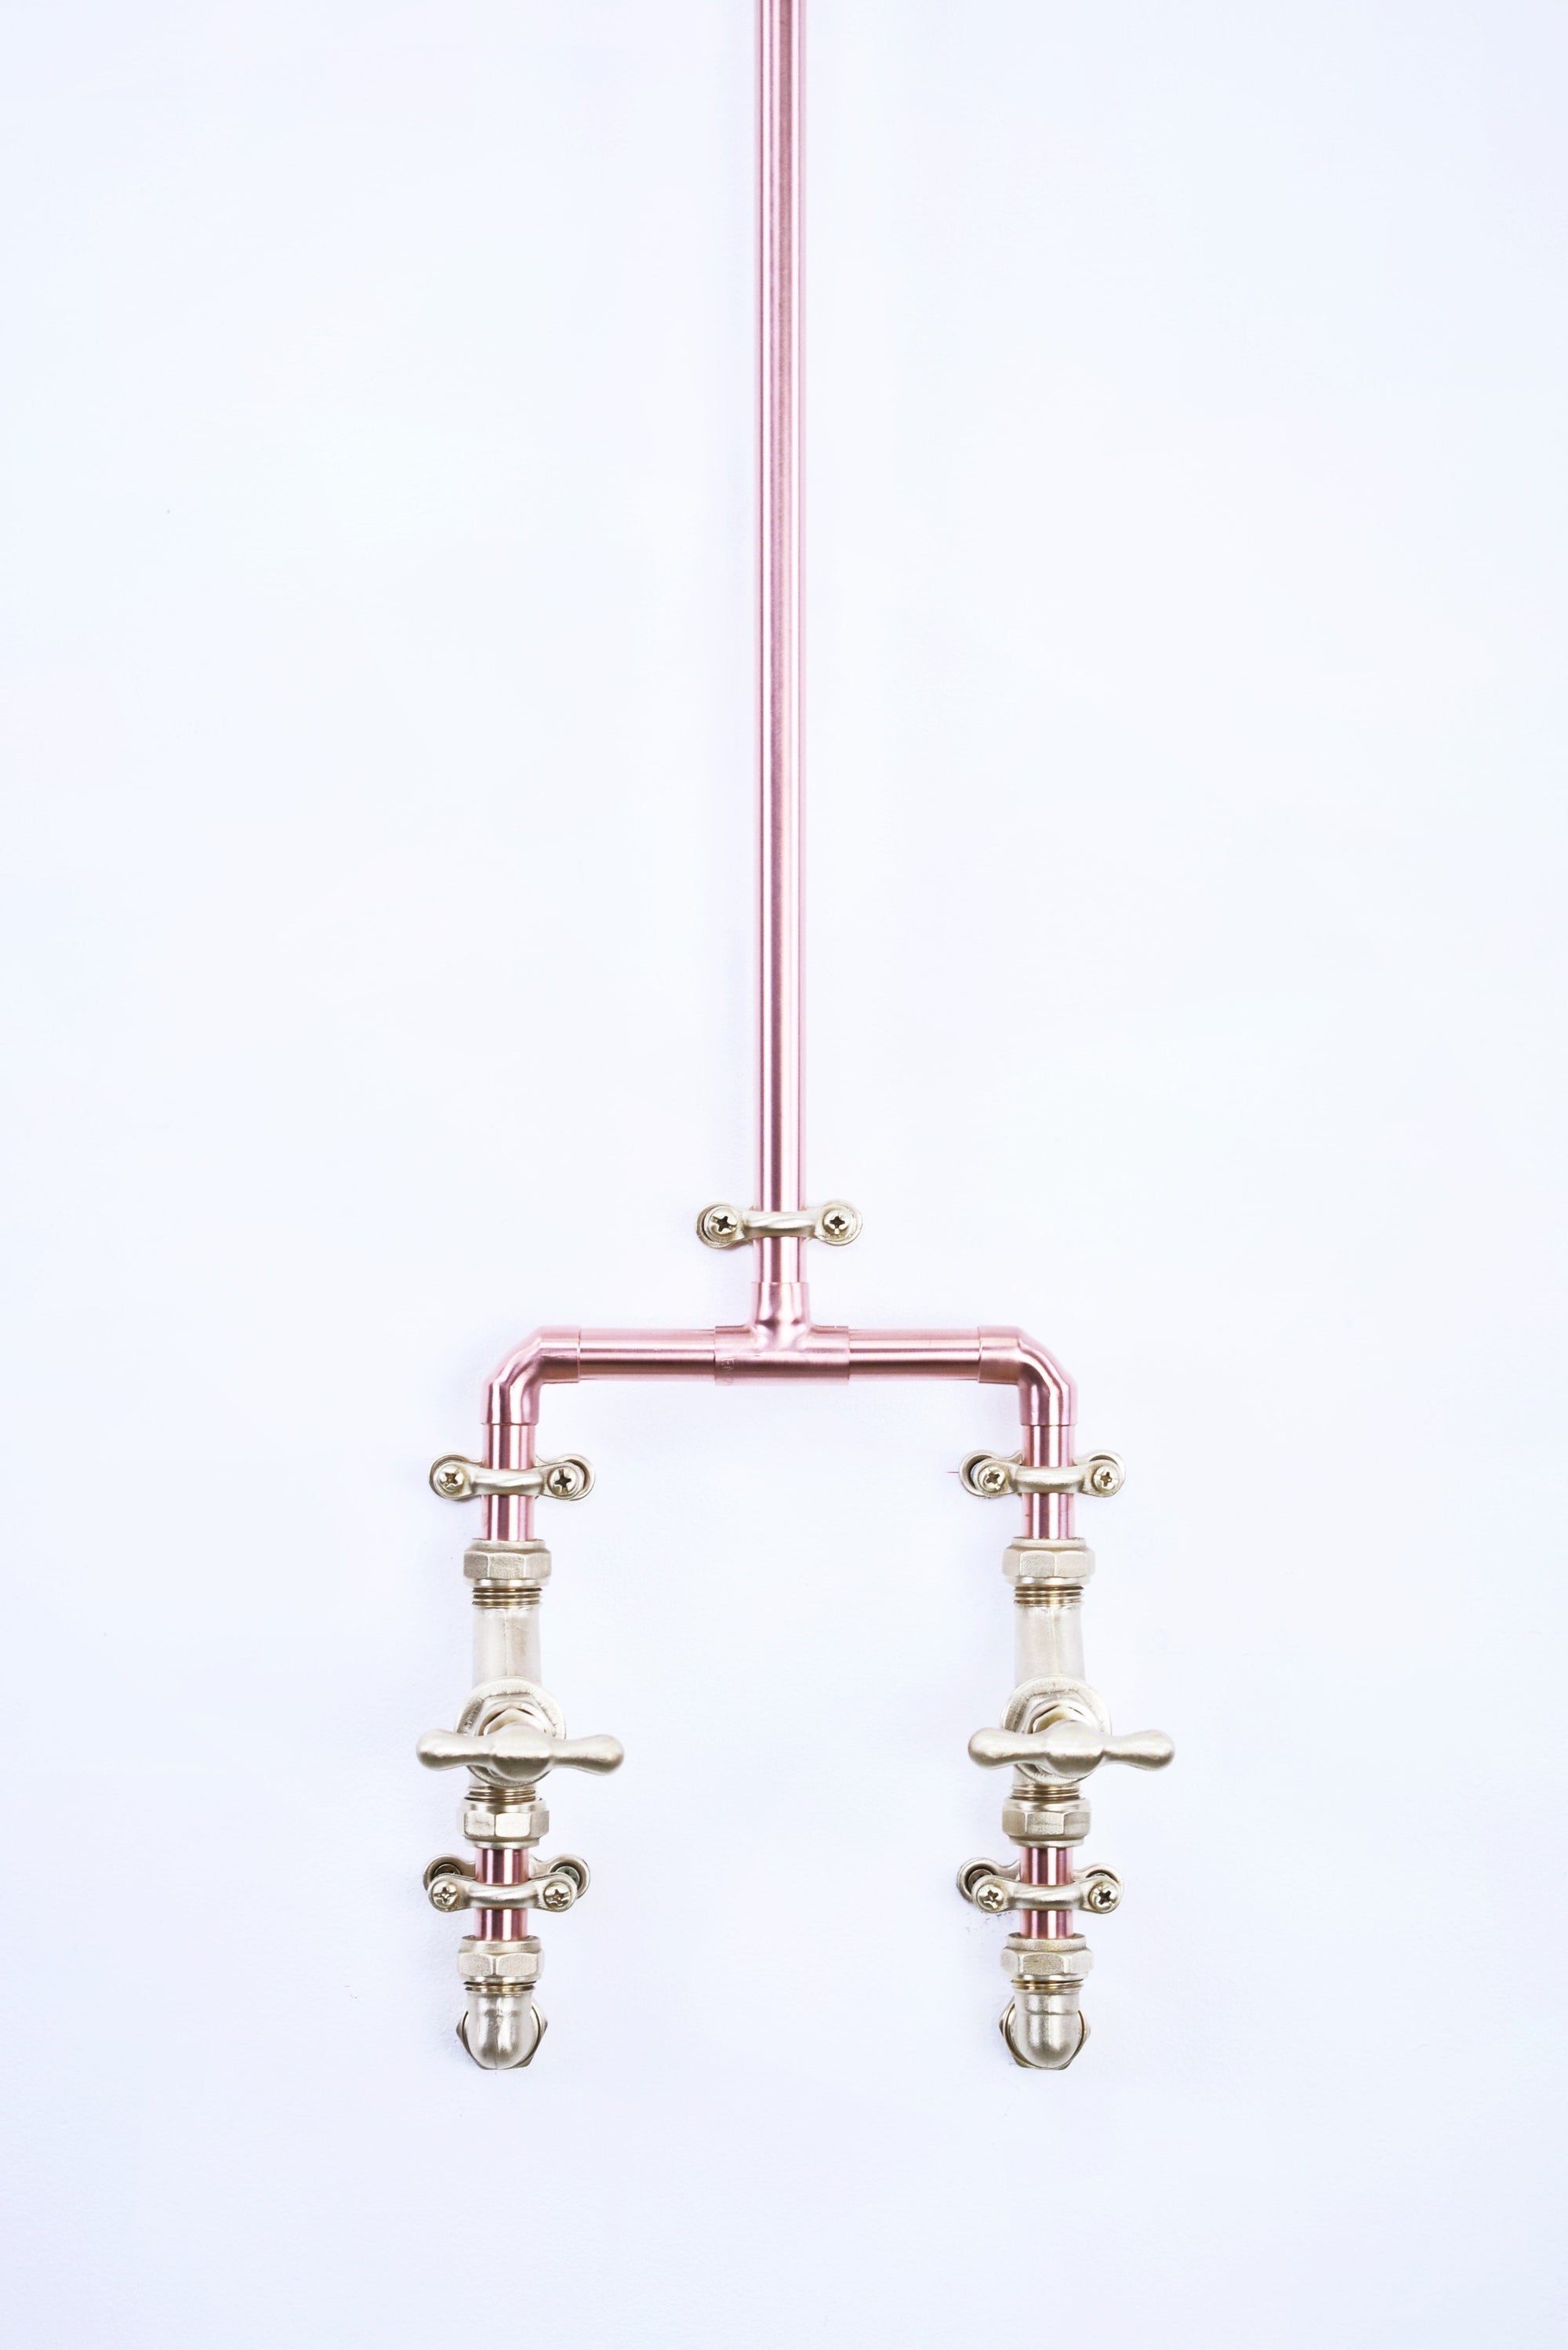 copper shower valves for showering